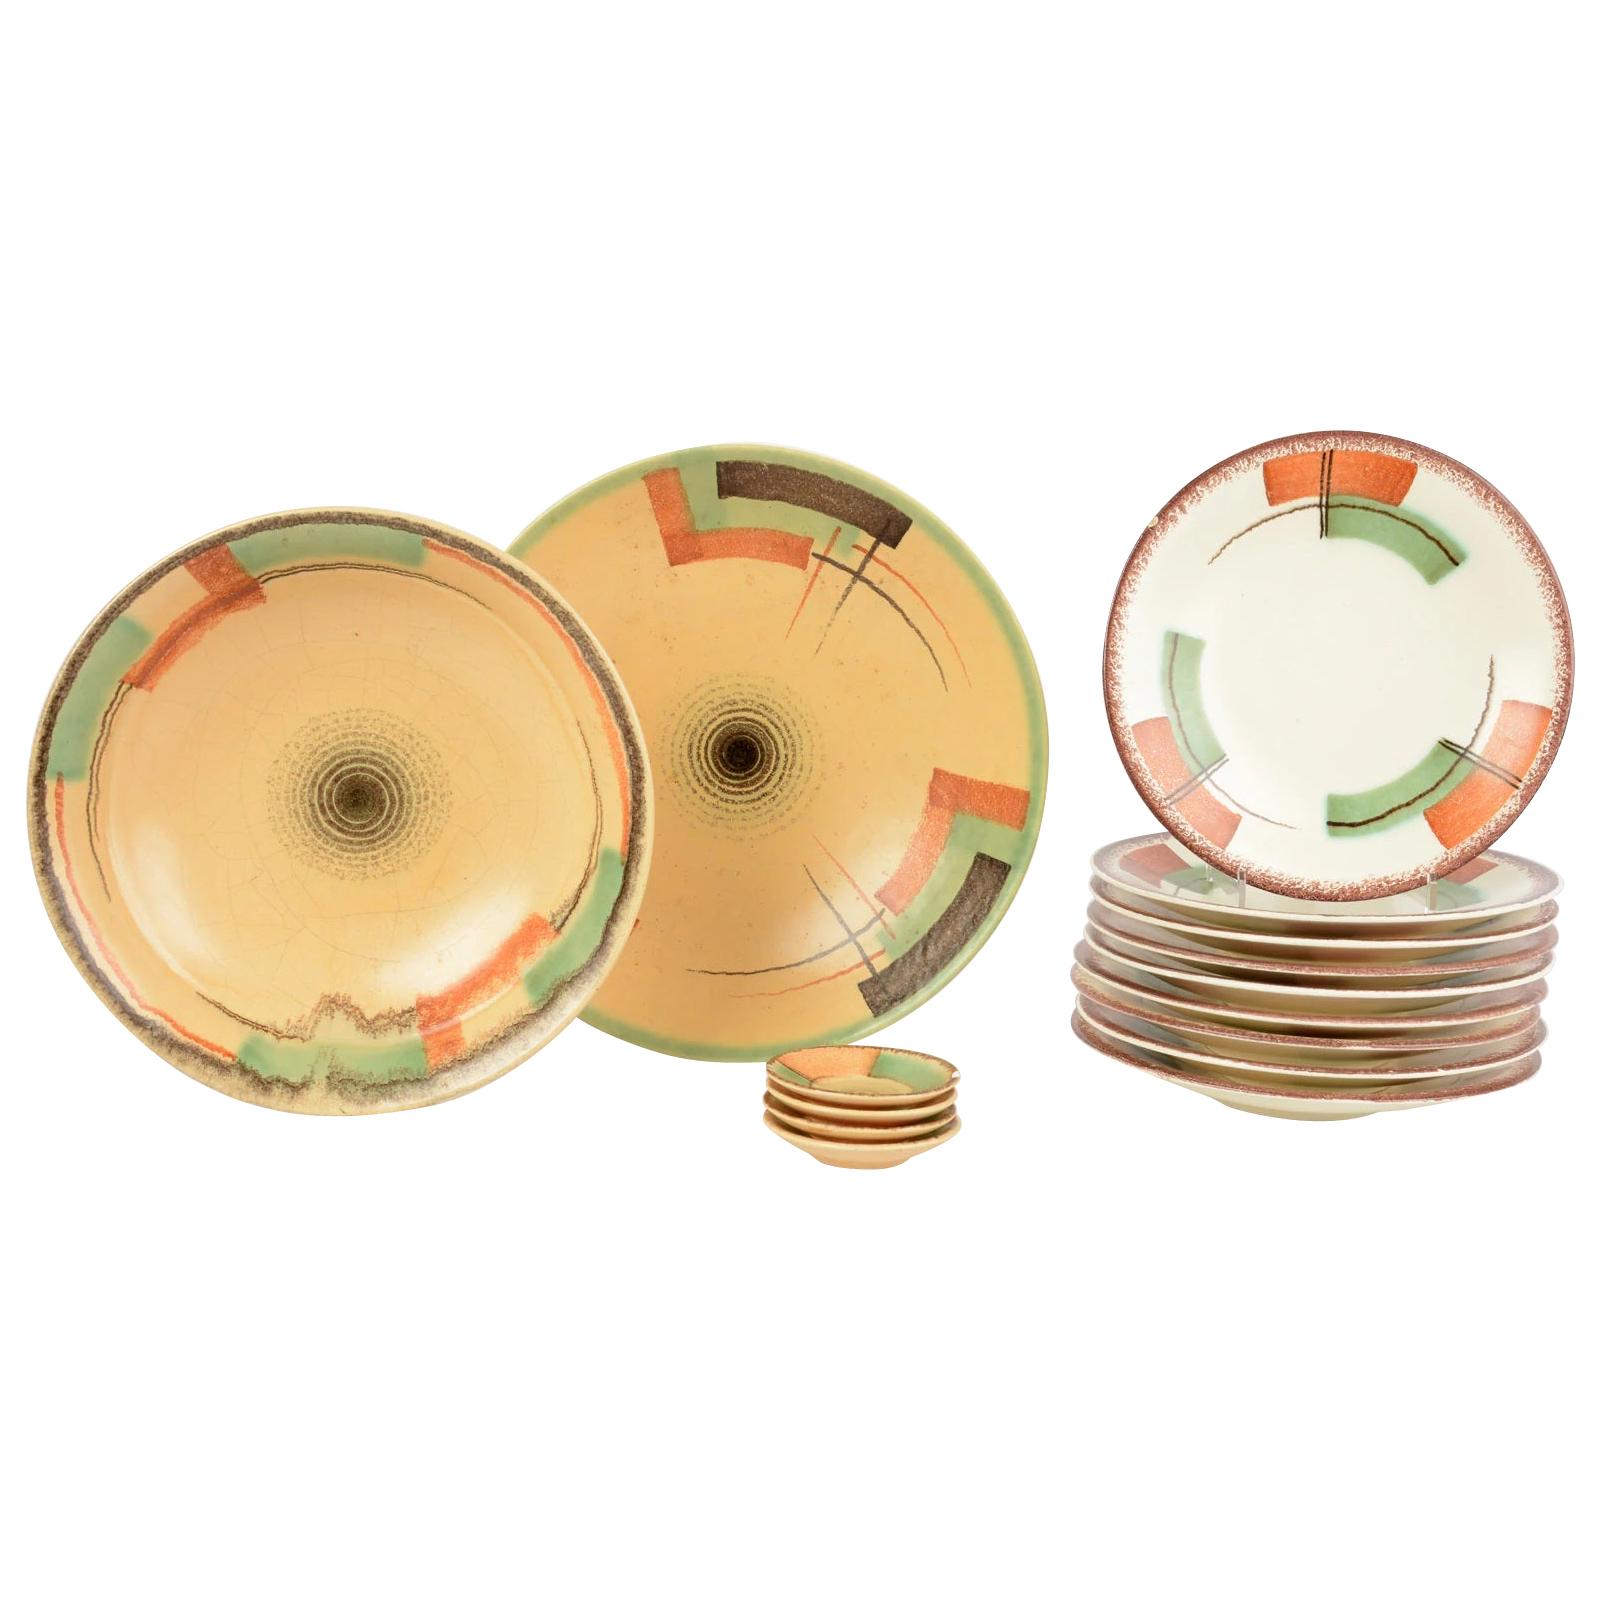 Set of Antique / Vintage German Art Deco Ceramic Plates 1920-1930 Esterwalda